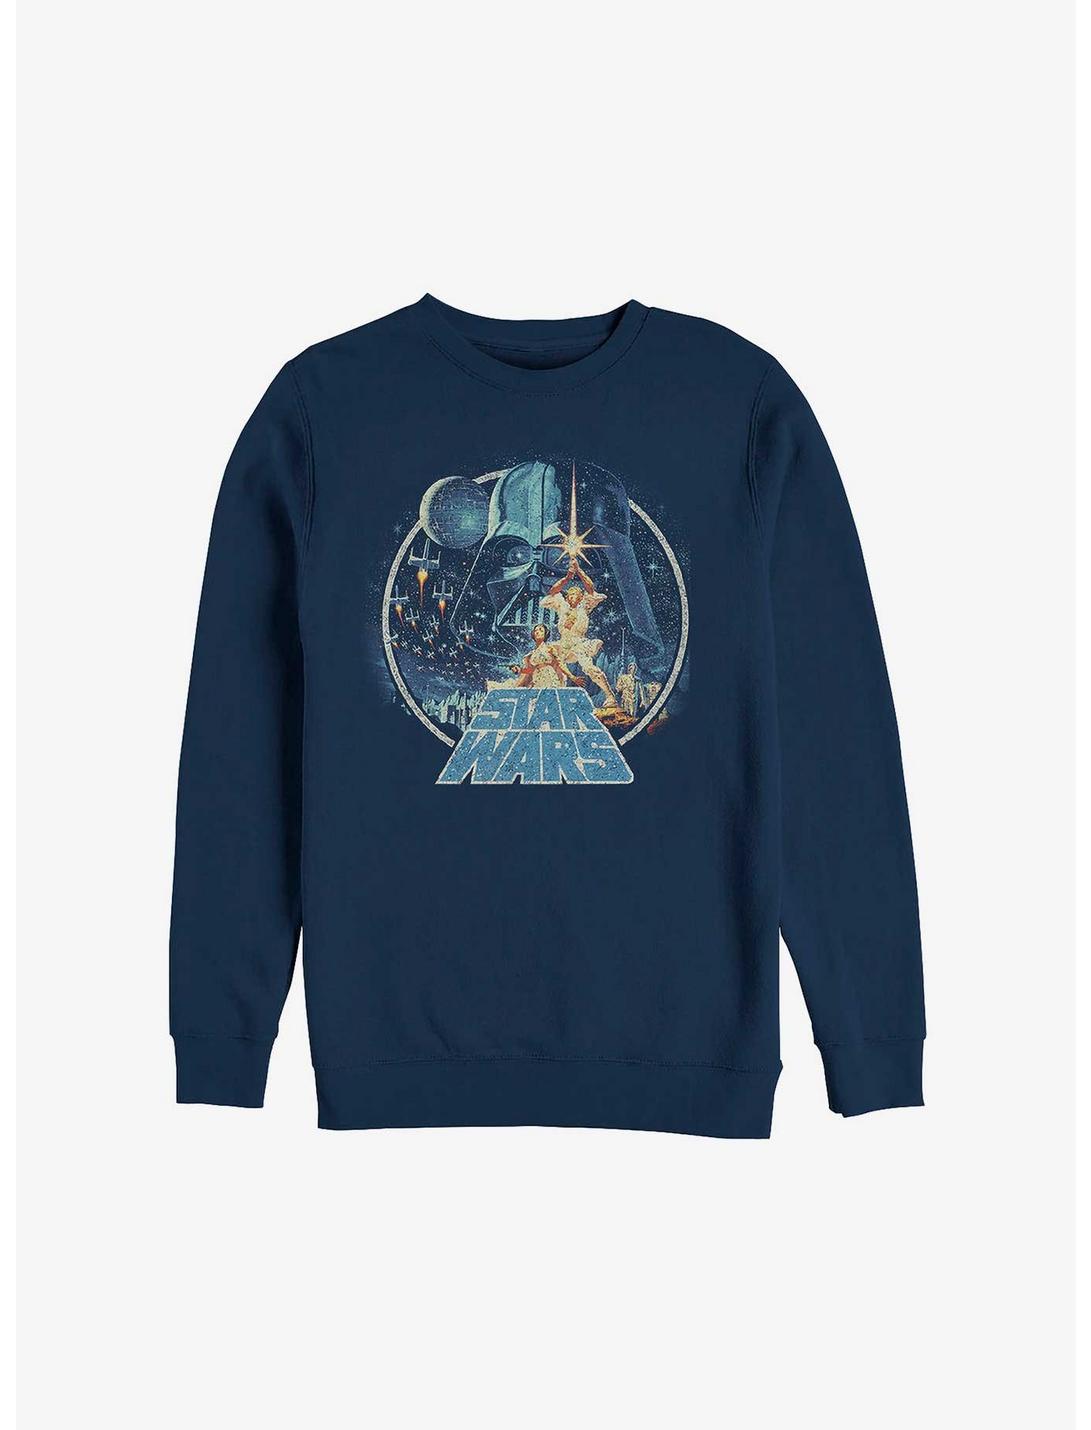 Star Wars Vintage Victory Sweatshirt, NAVY, hi-res